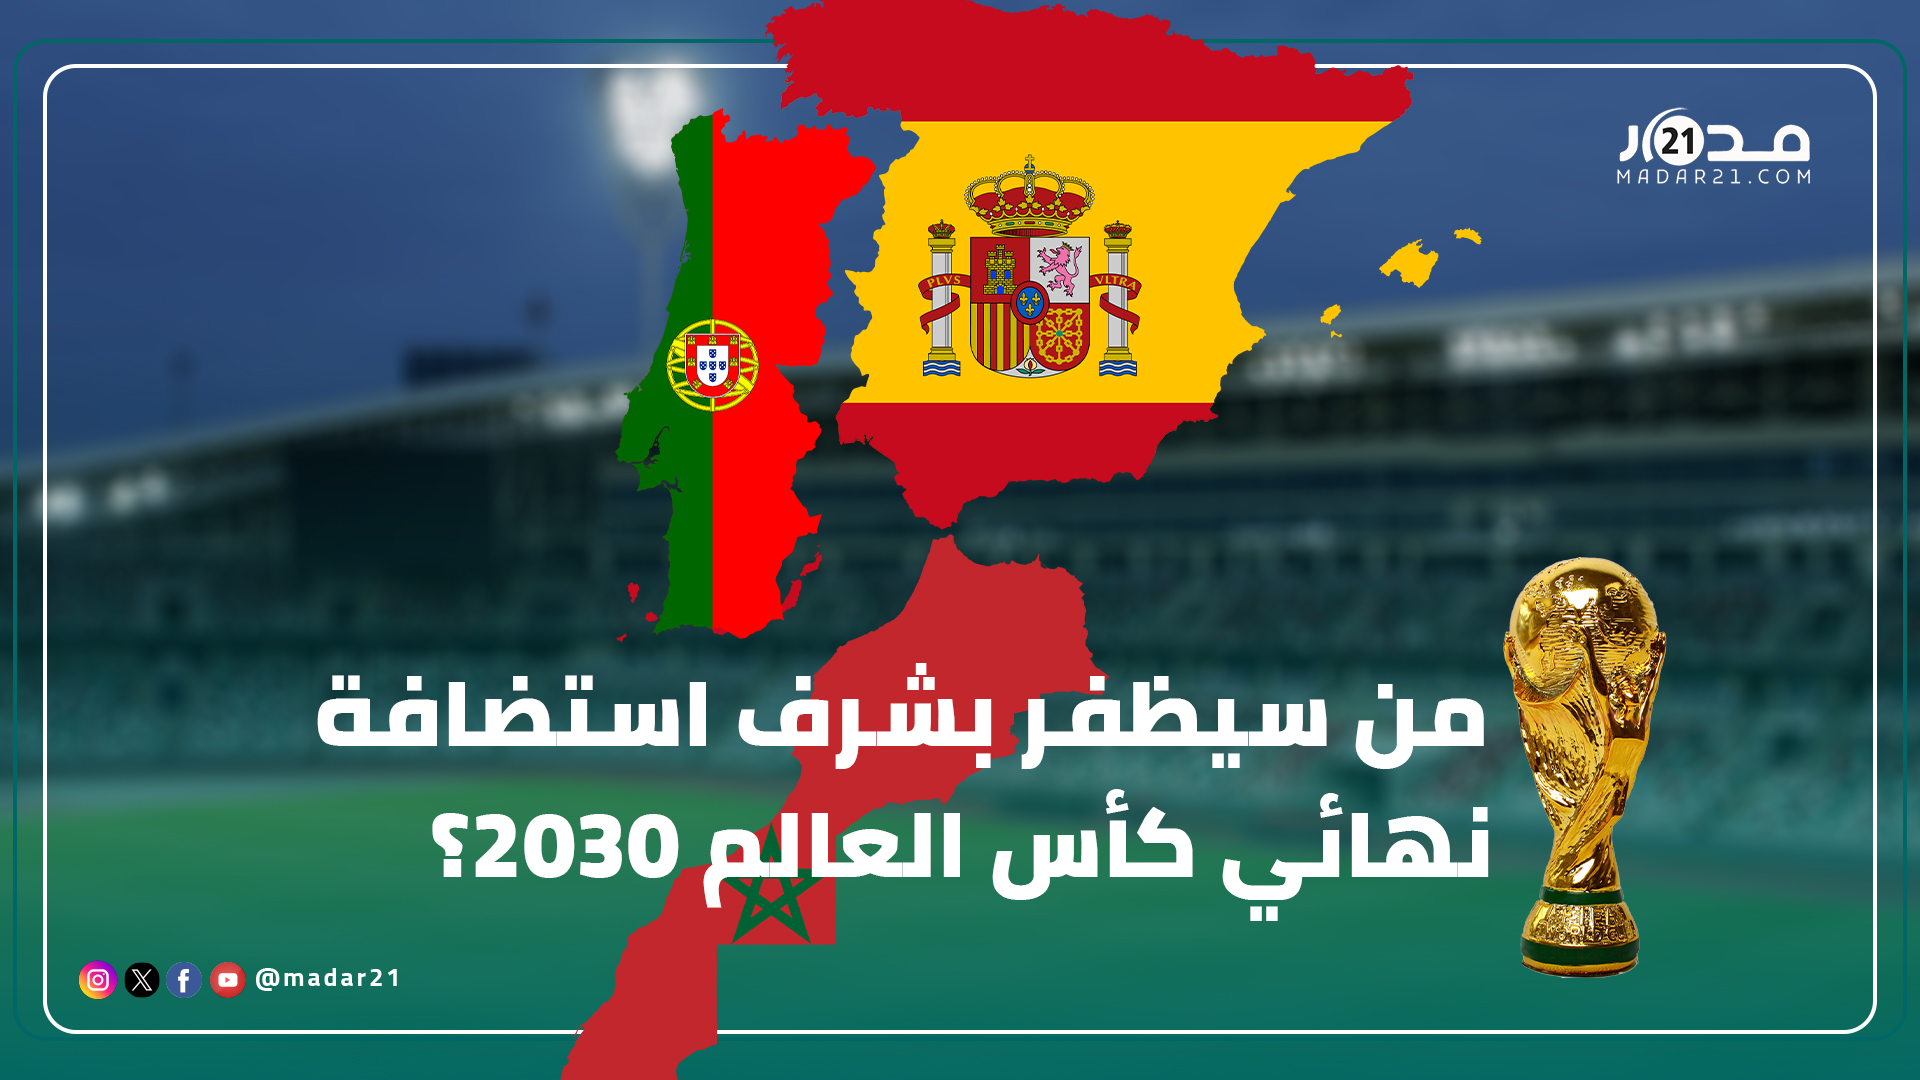 هل سينتزع ملعب الدار البيضاء الكبير المنتظر شرف استضافة نهائي مونديال 2030